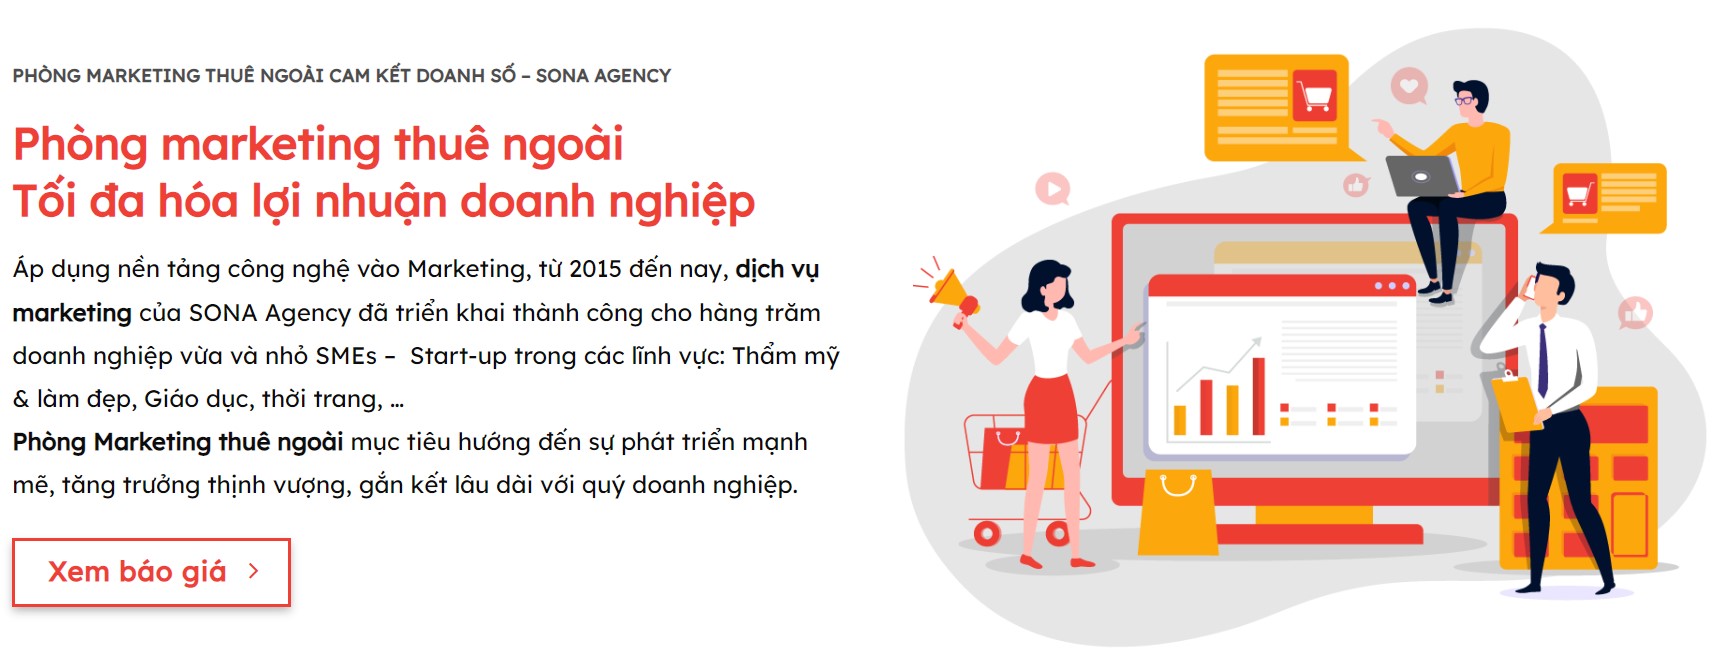 SONA Agency